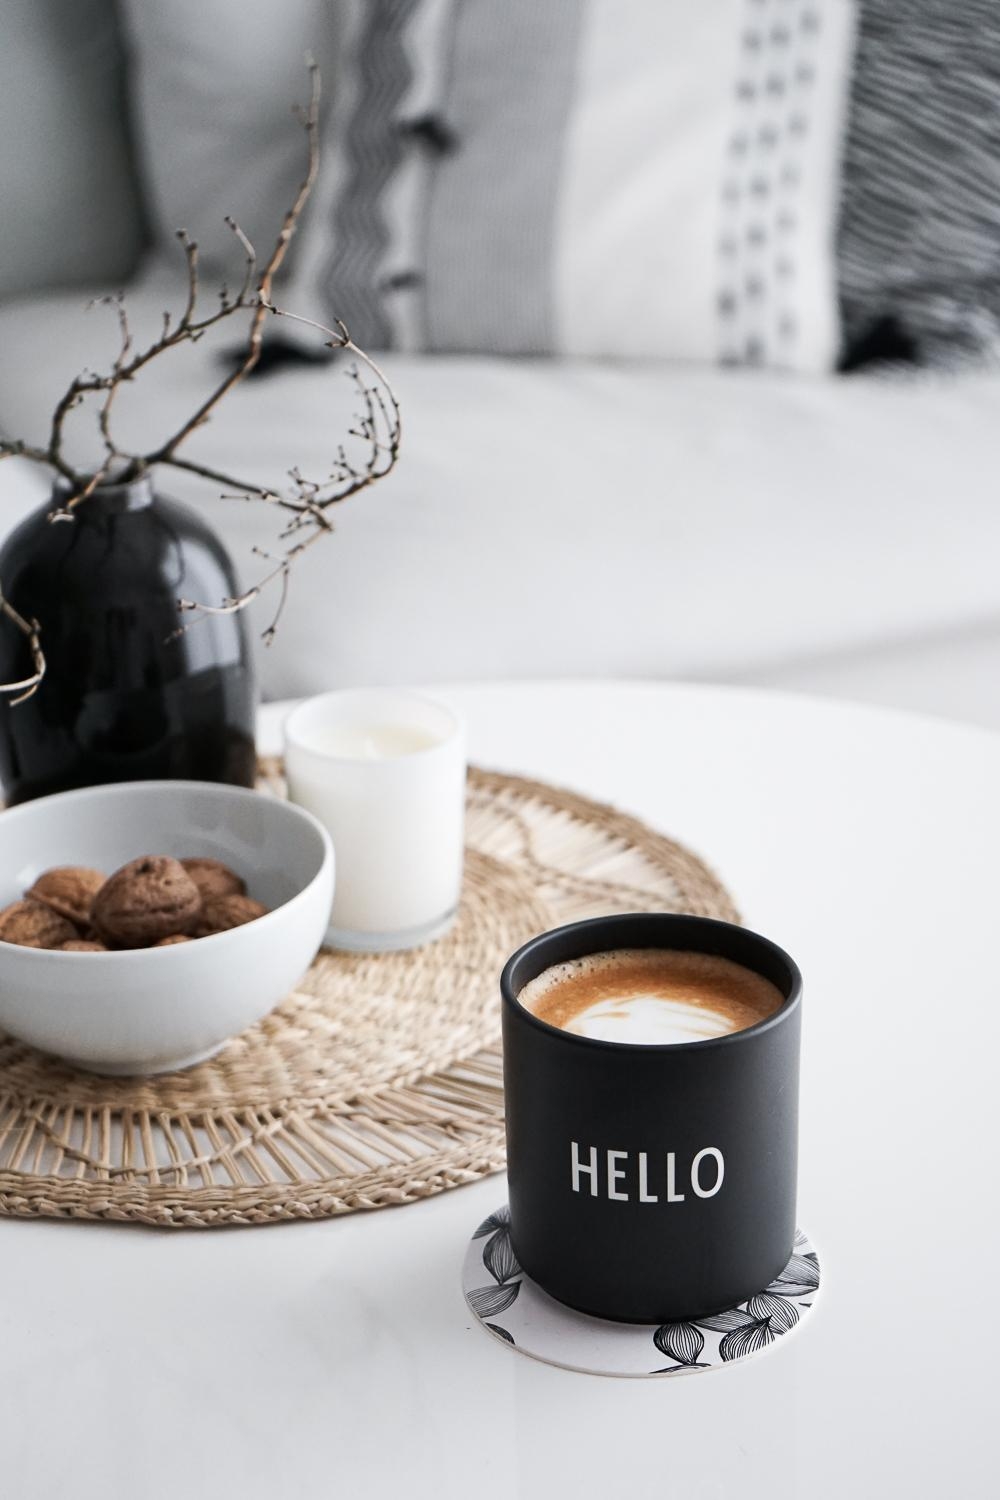 Hello:Winterdeko mit trockenen Ästen und ohne Kaffee geht nichts!

#zweige #deko #vase #kaffee #designletters #becher 